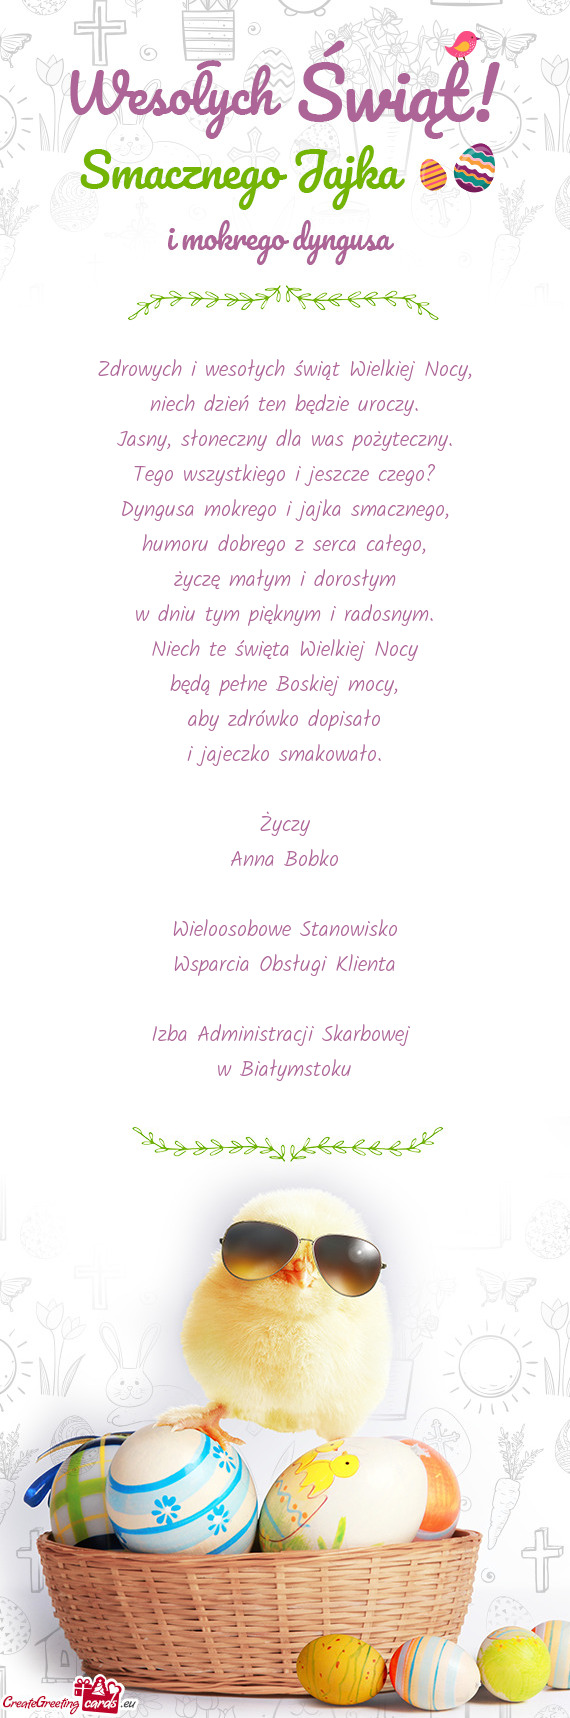 Życzy Anna Bobko Wieloosobowe Stanowisko Wsparcia Obsługi Klienta Izba Administracji S